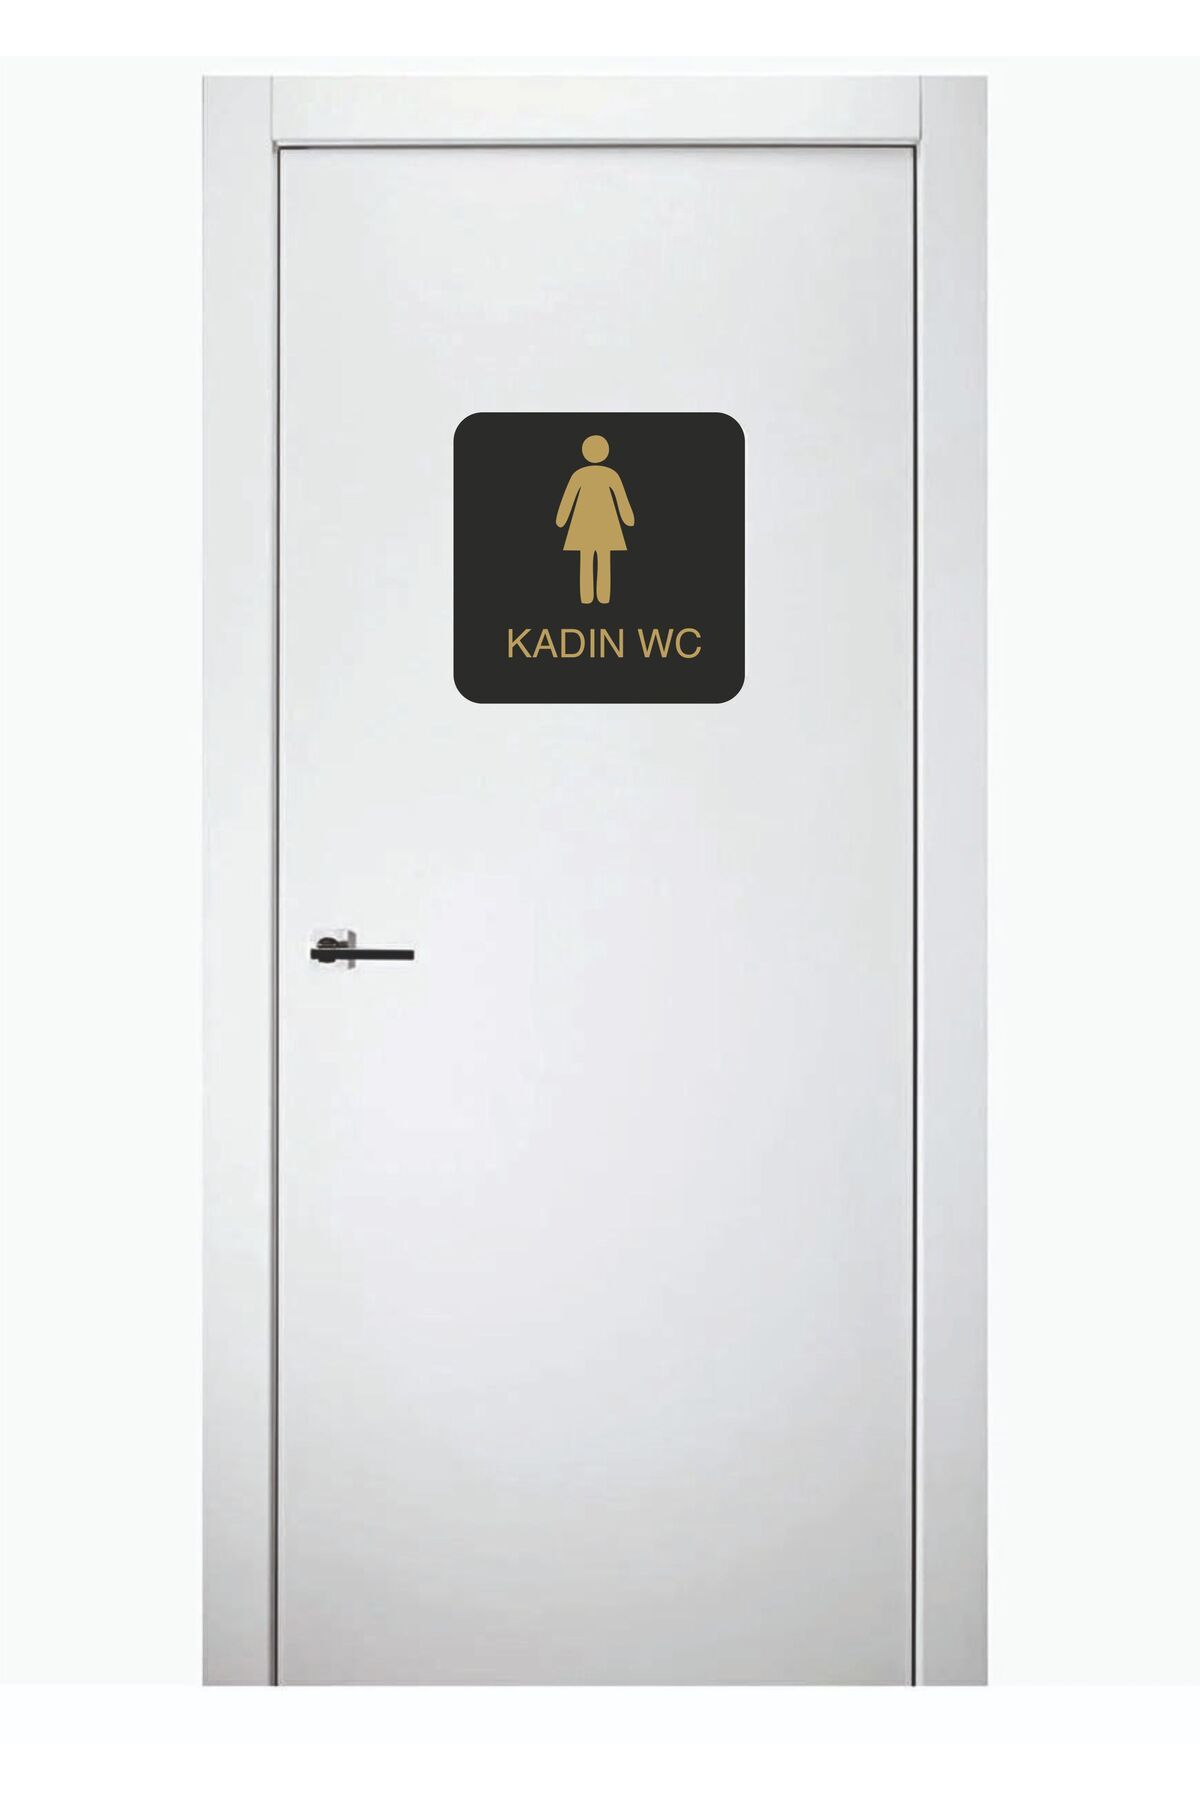 SIRADIŞI REKLAM Kadın Wc Levhası Ofis Yönlendirme Kapı Isimlik Tuvalet Tabela